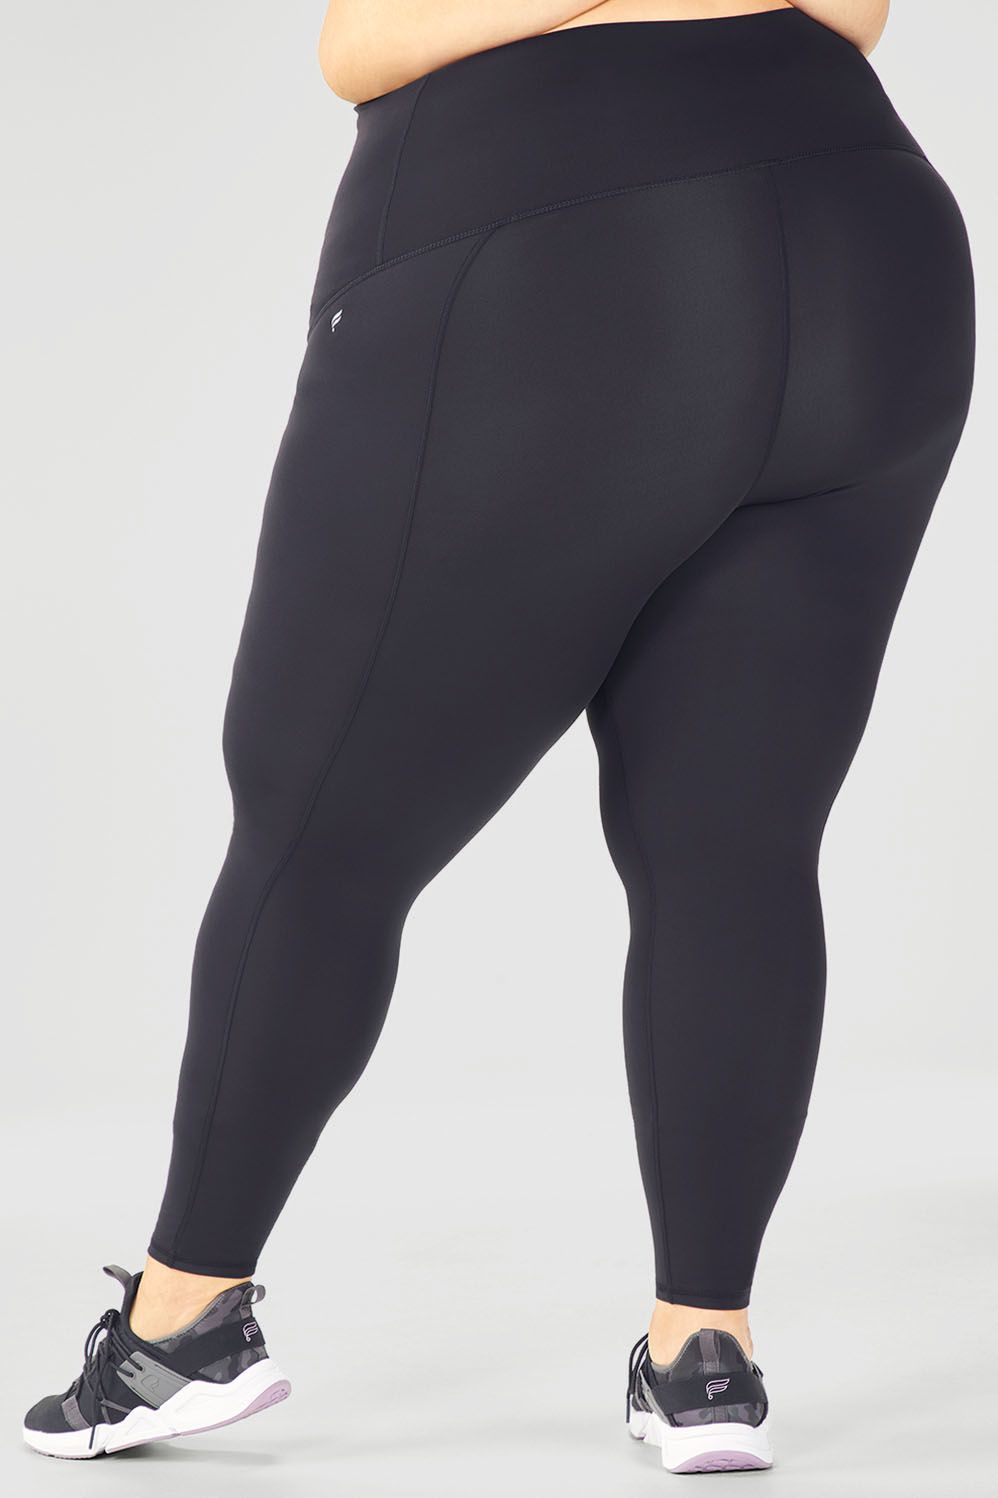 BSP women's black leggings size M – Solé Resale Boutique